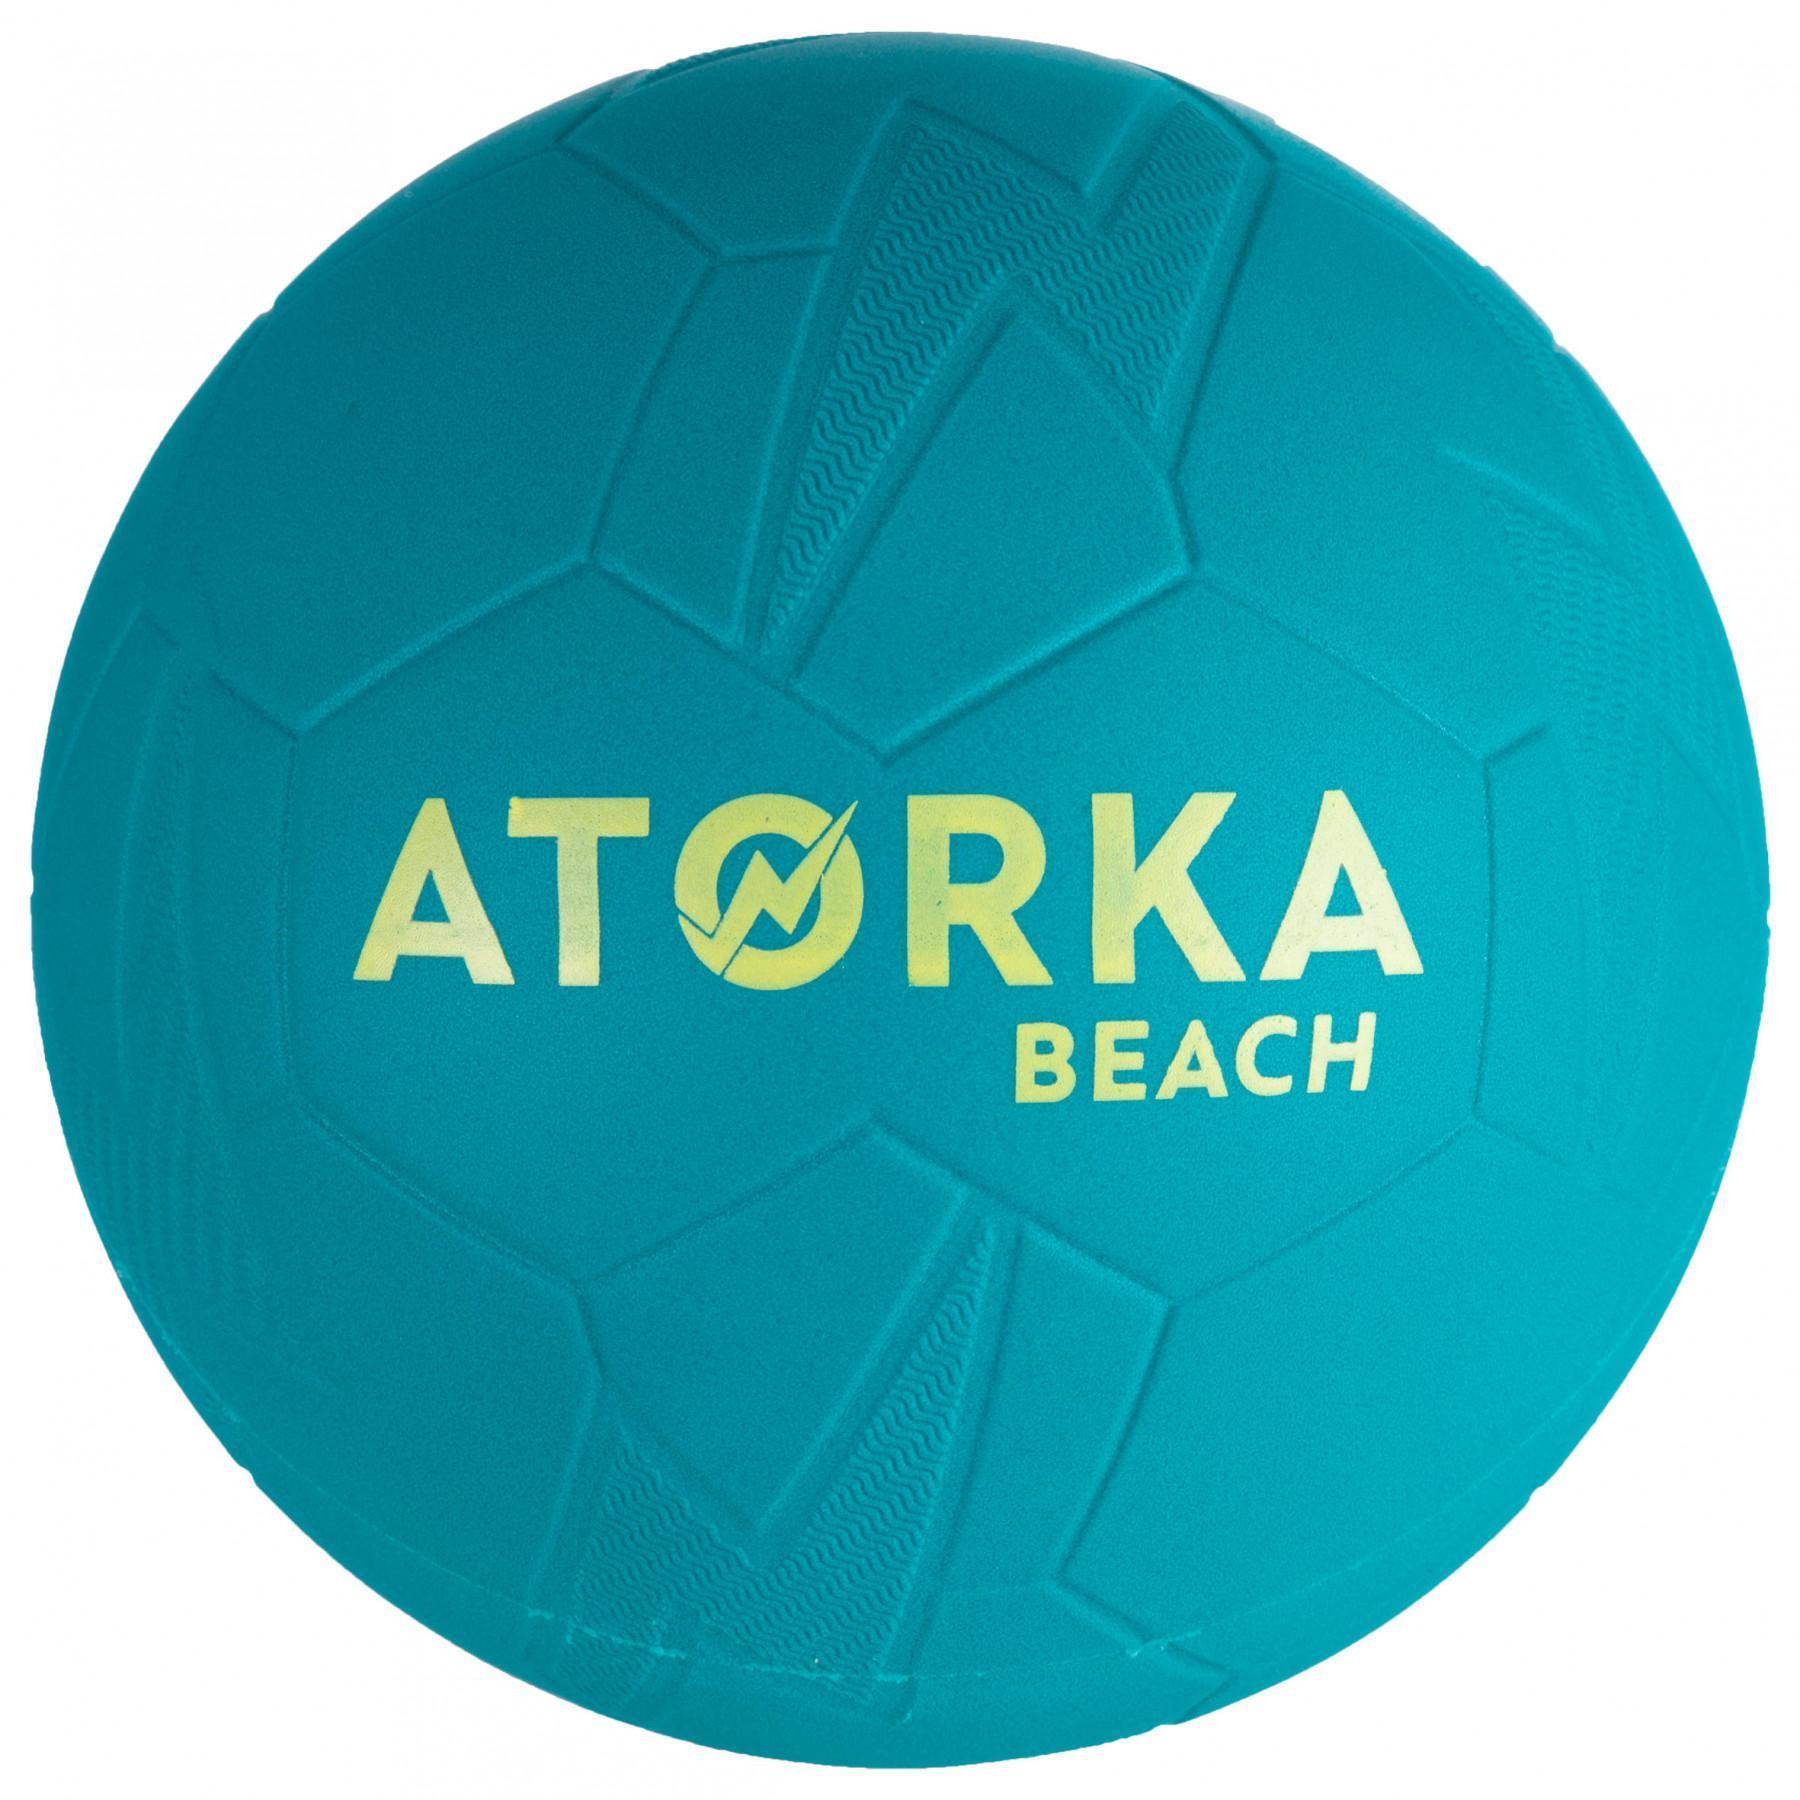 Conjunto de 3 bolas de praia Atorka HB500B